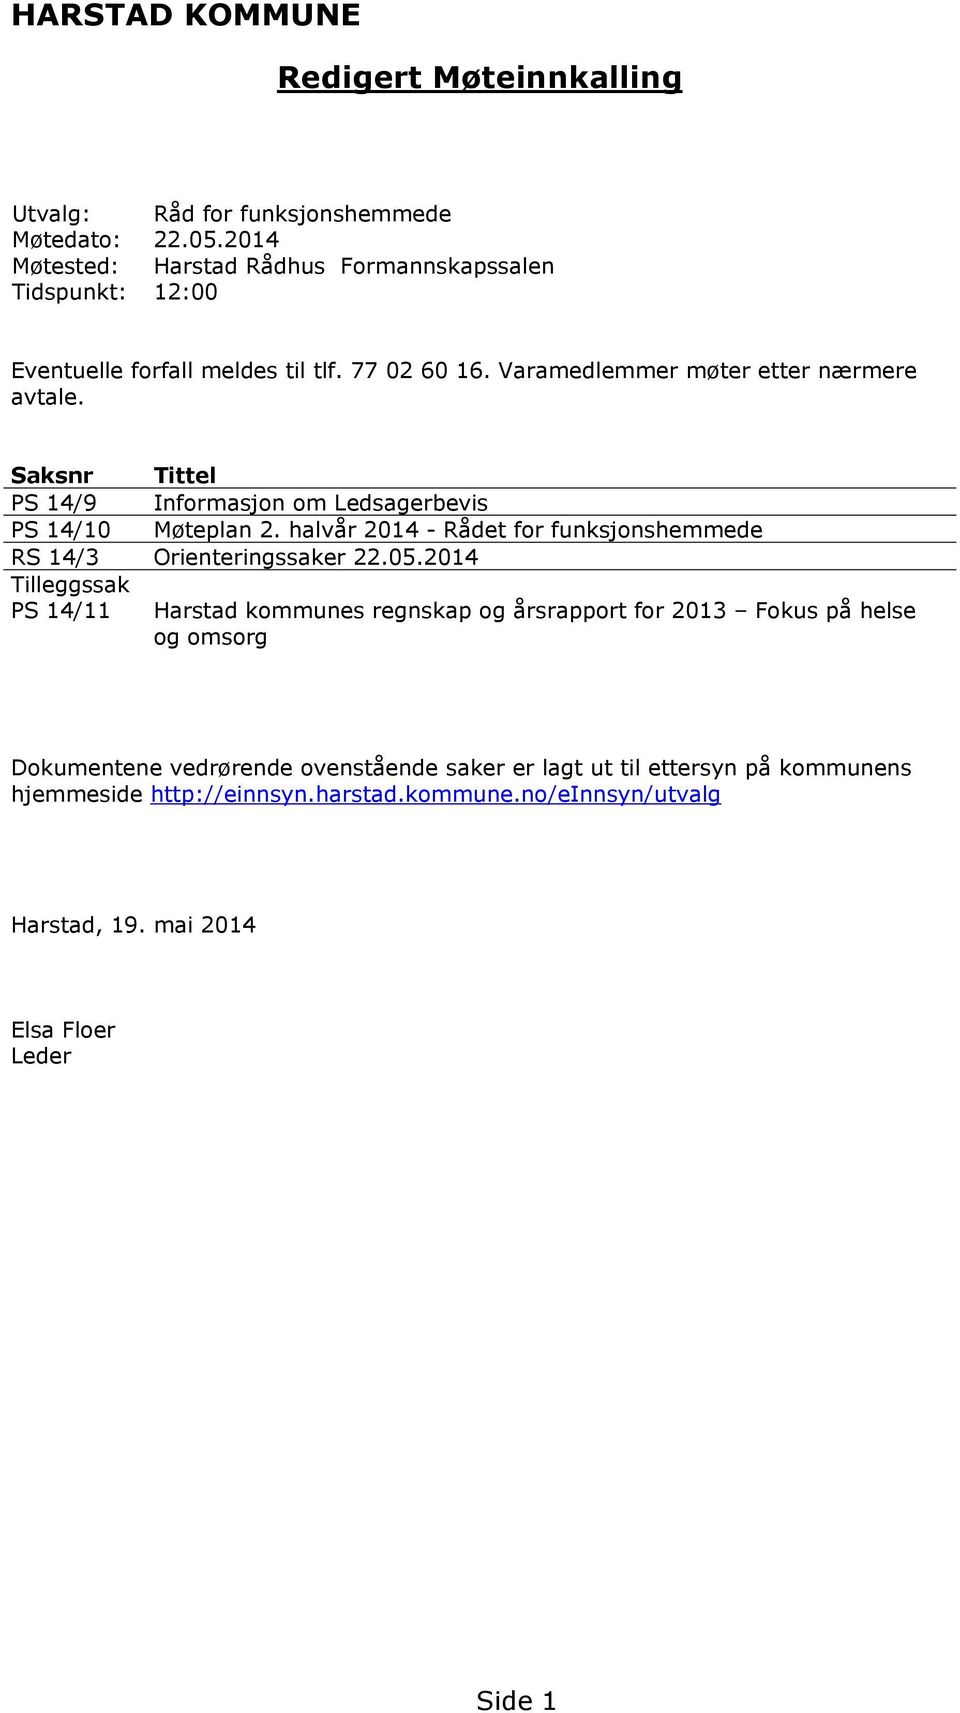 Saksnr Tittel PS 14/9 Informasjon om Ledsagerbevis PS 14/10 Møteplan 2. halvår 2014 - Rådet for funksjonshemmede RS 14/3 Orienteringssaker 22.05.